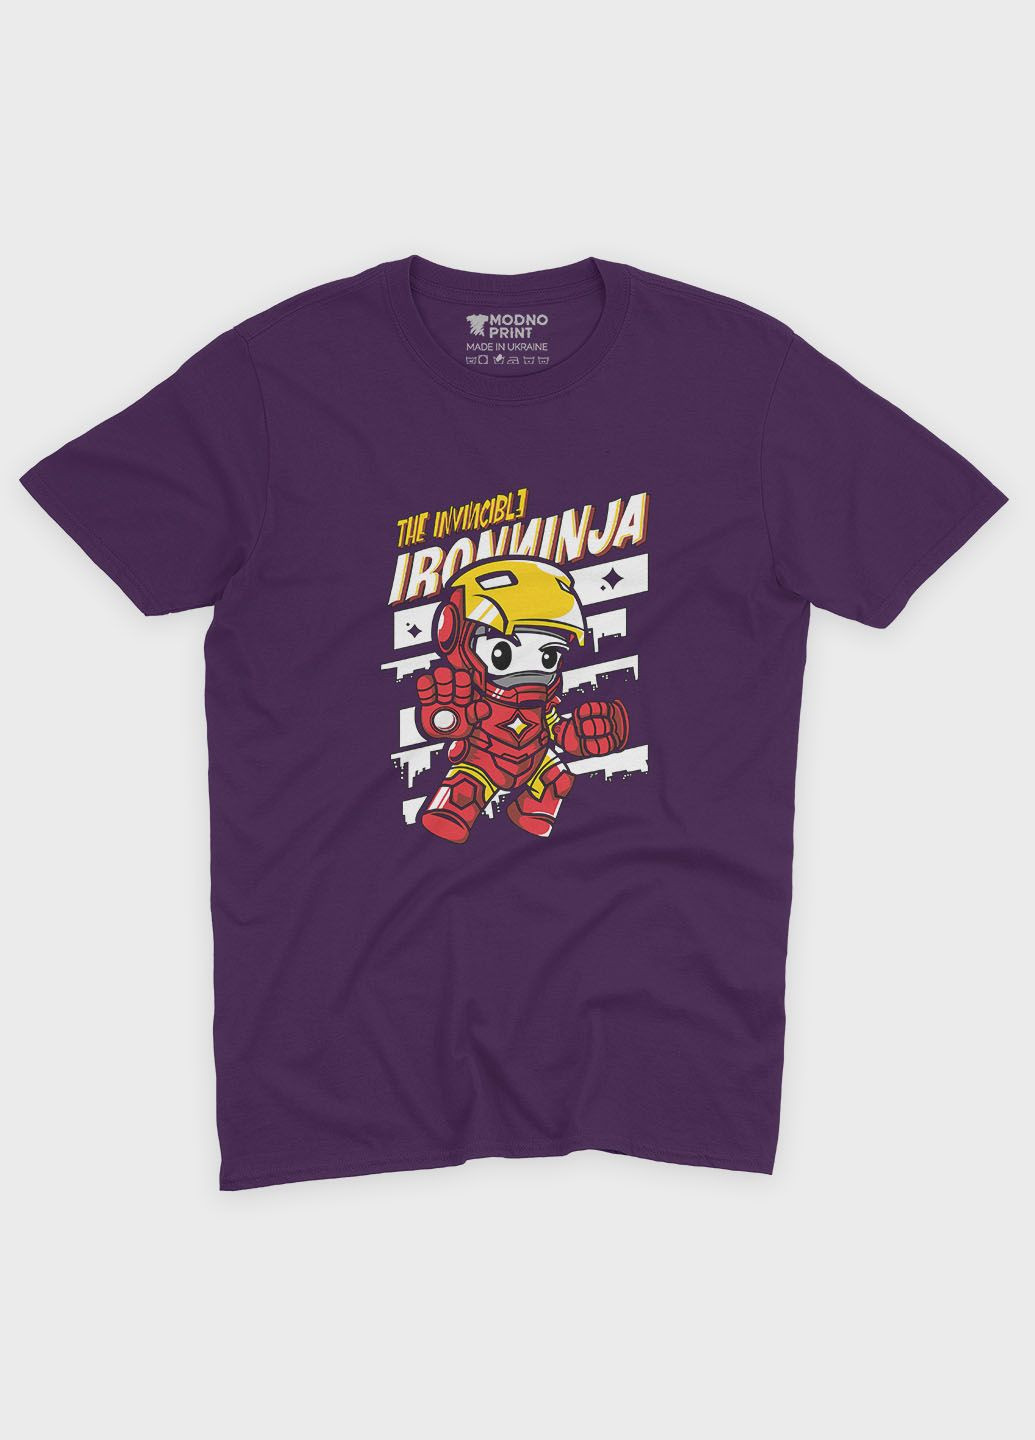 Фіолетова демісезонна футболка для хлопчика з принтом супергероя - залізна людина (ts001-1-dby-006-016-009-b) Modno